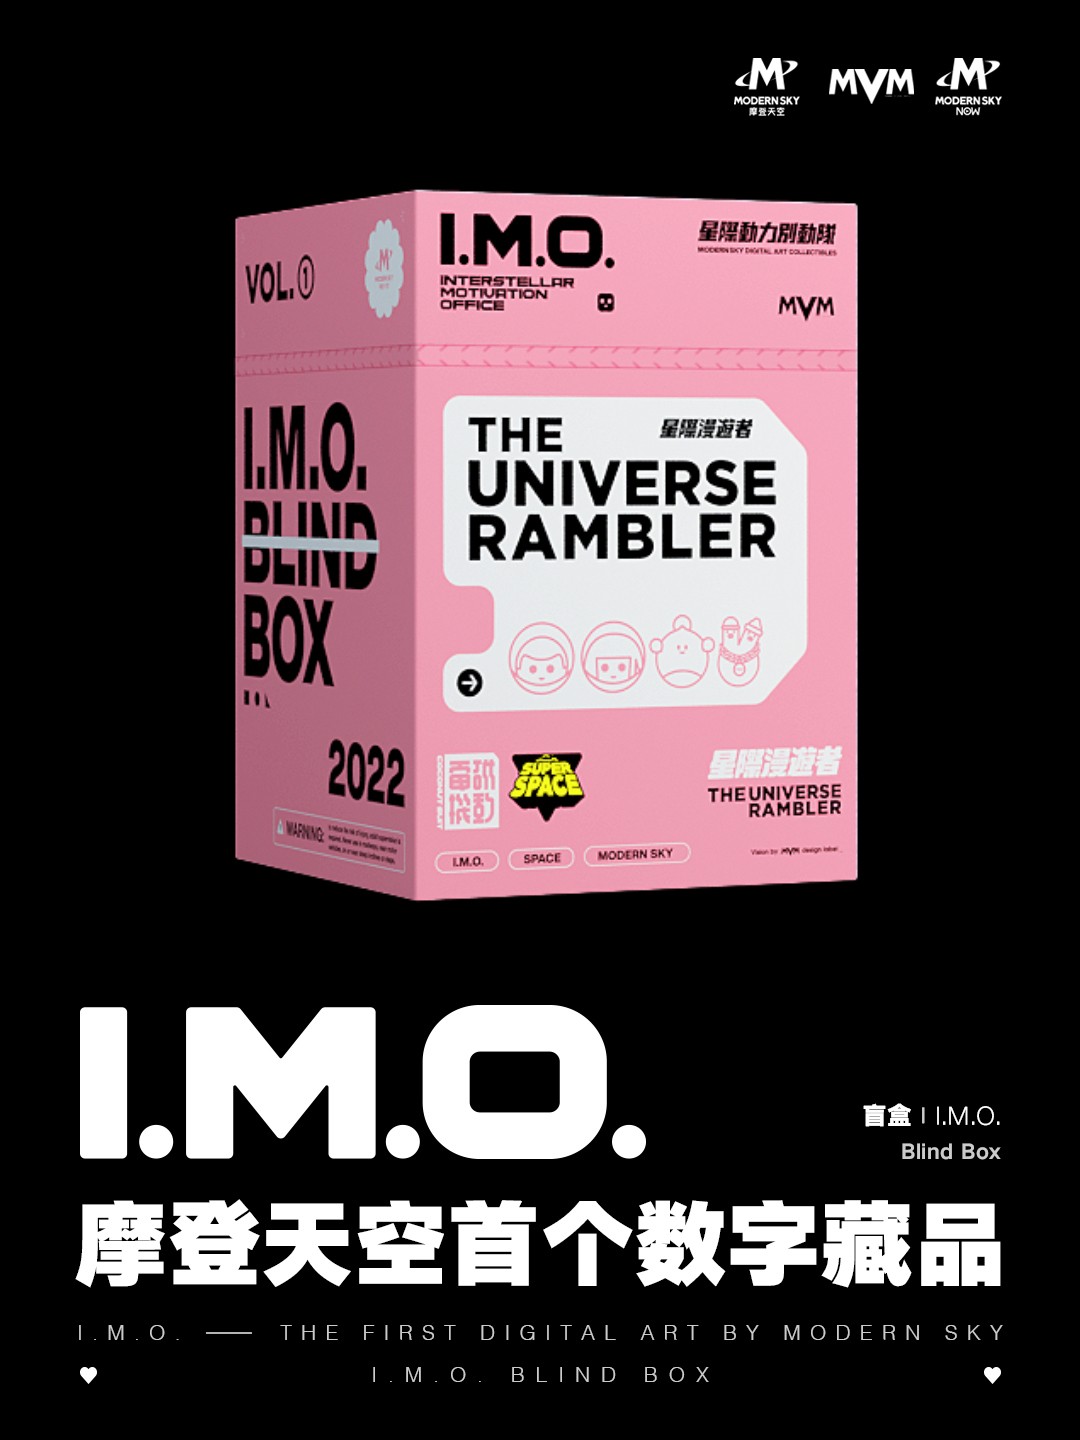 摩登天空首个数字藏品系列——I.M.O. 星际动力别动队-星际漫游者的副本.jpg